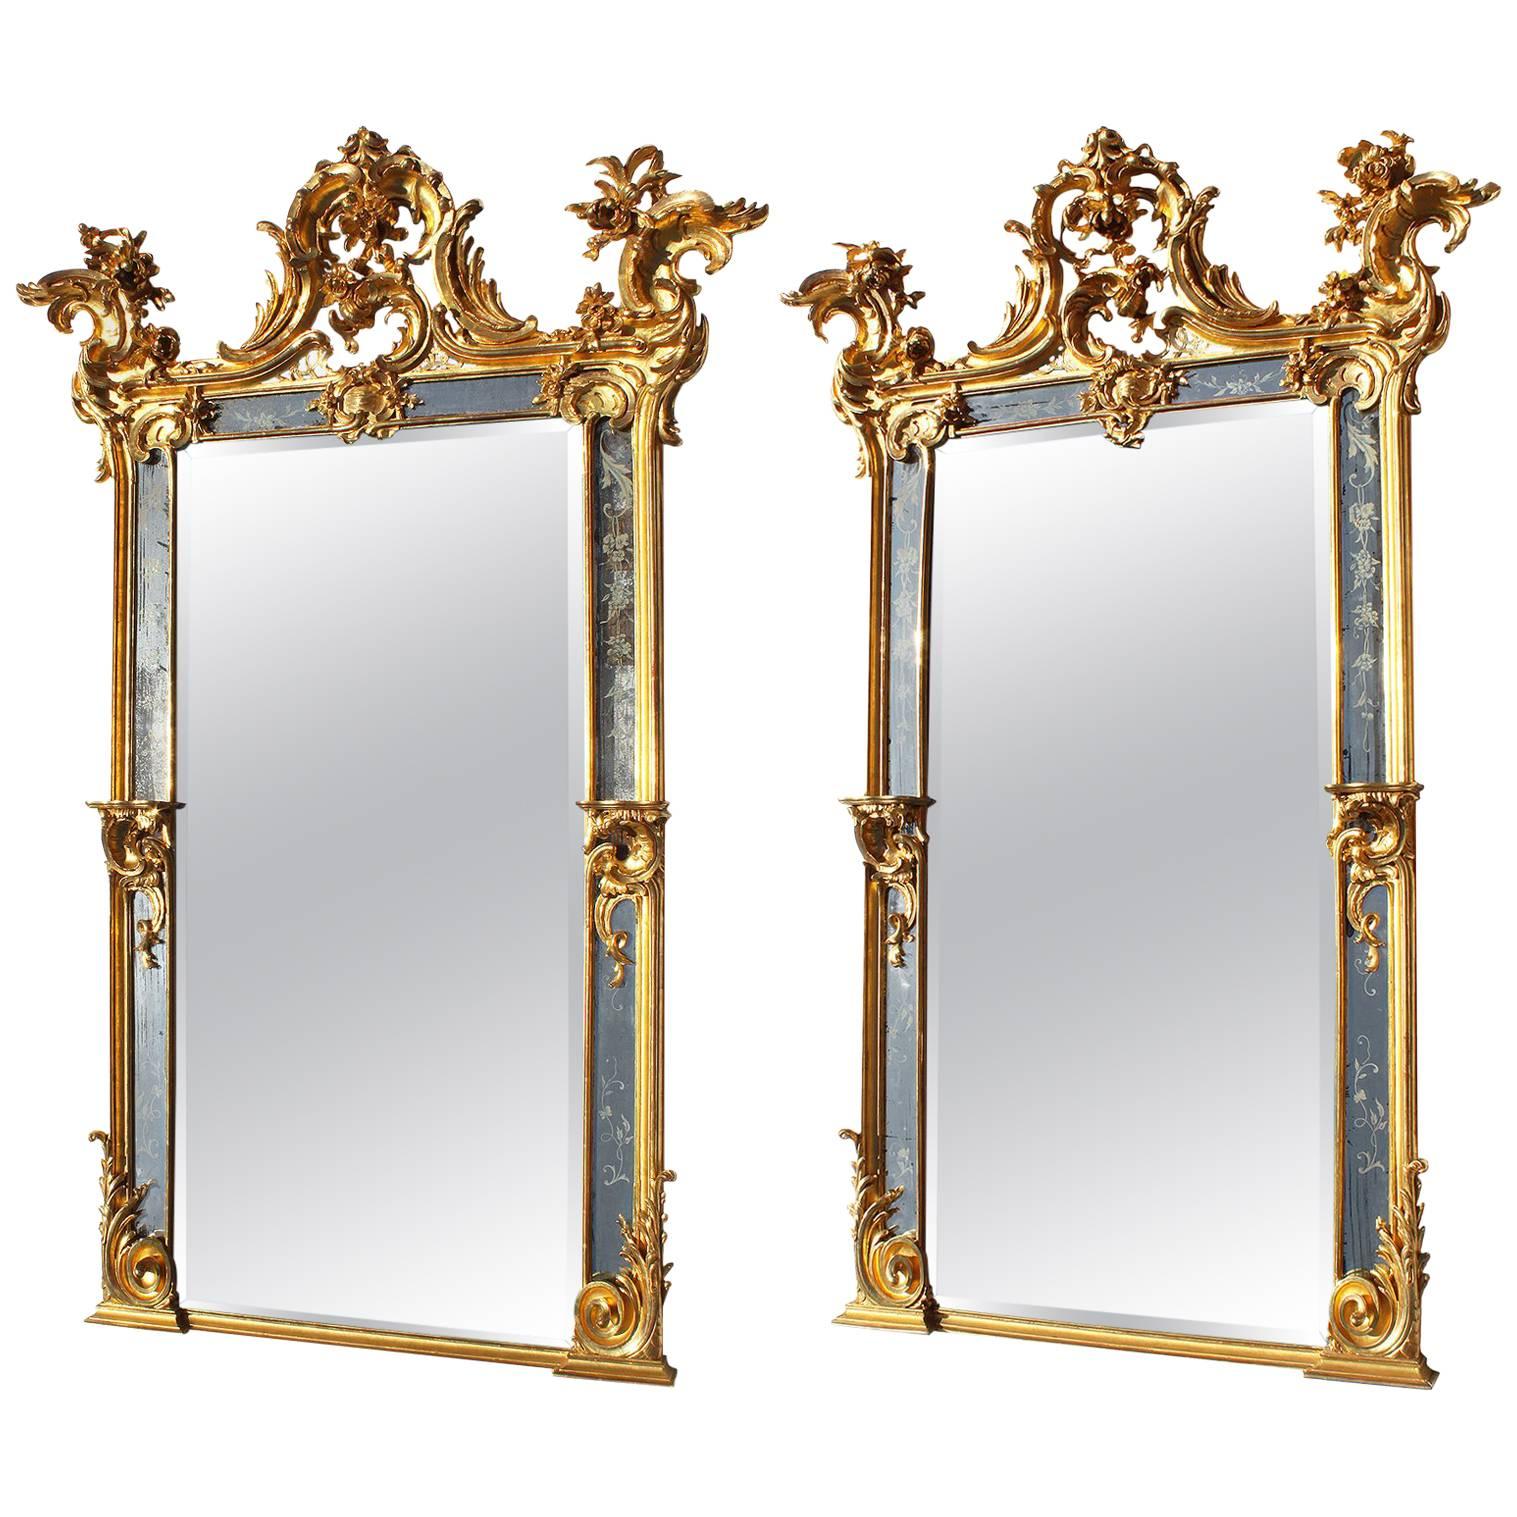 Très belle paire de miroirs de pilier de style rococo français du 19ème siècle en bois doré sculpté